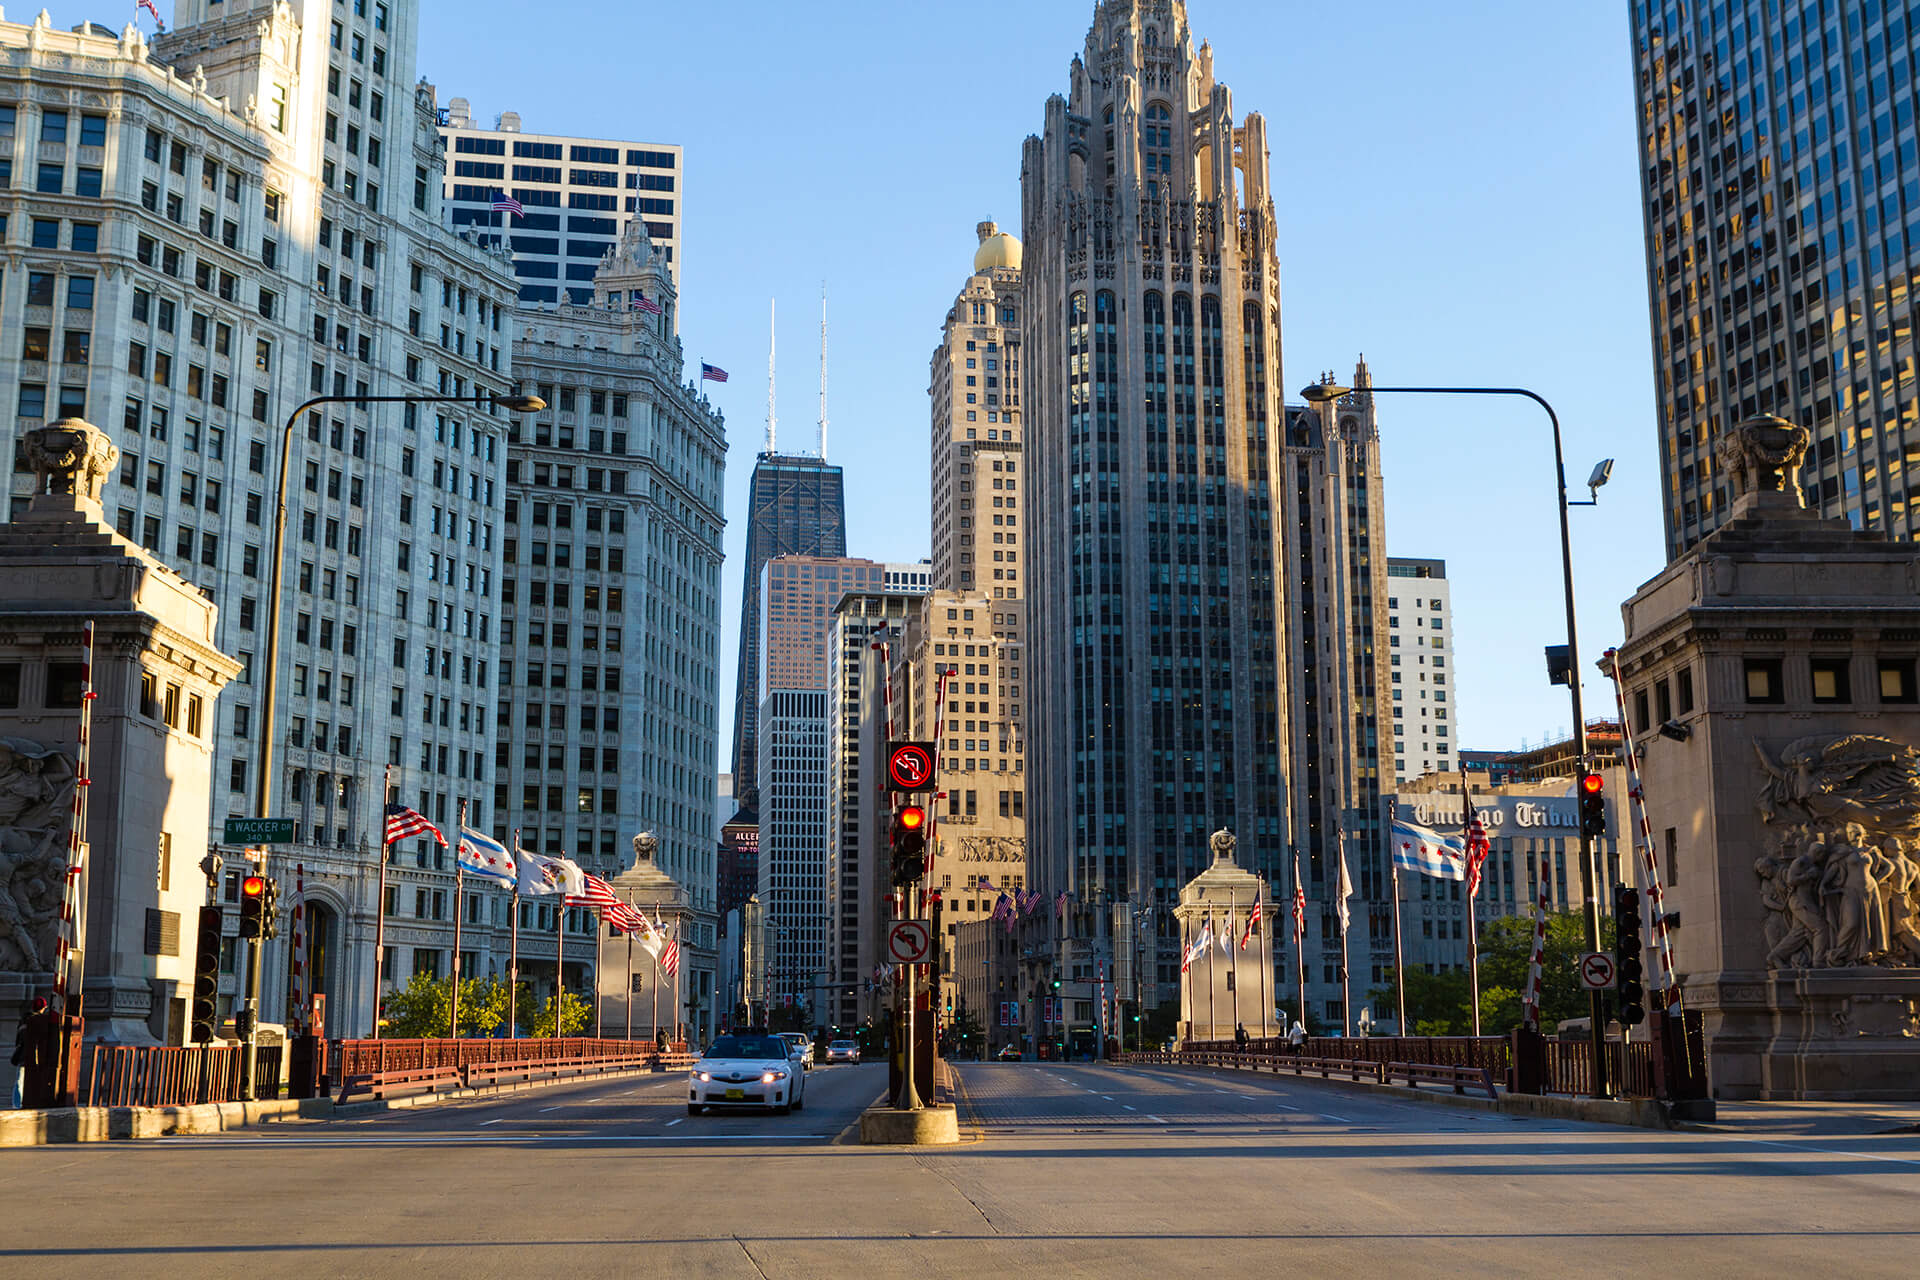 North Michigan Avenue in Chicago, Illinois, United States